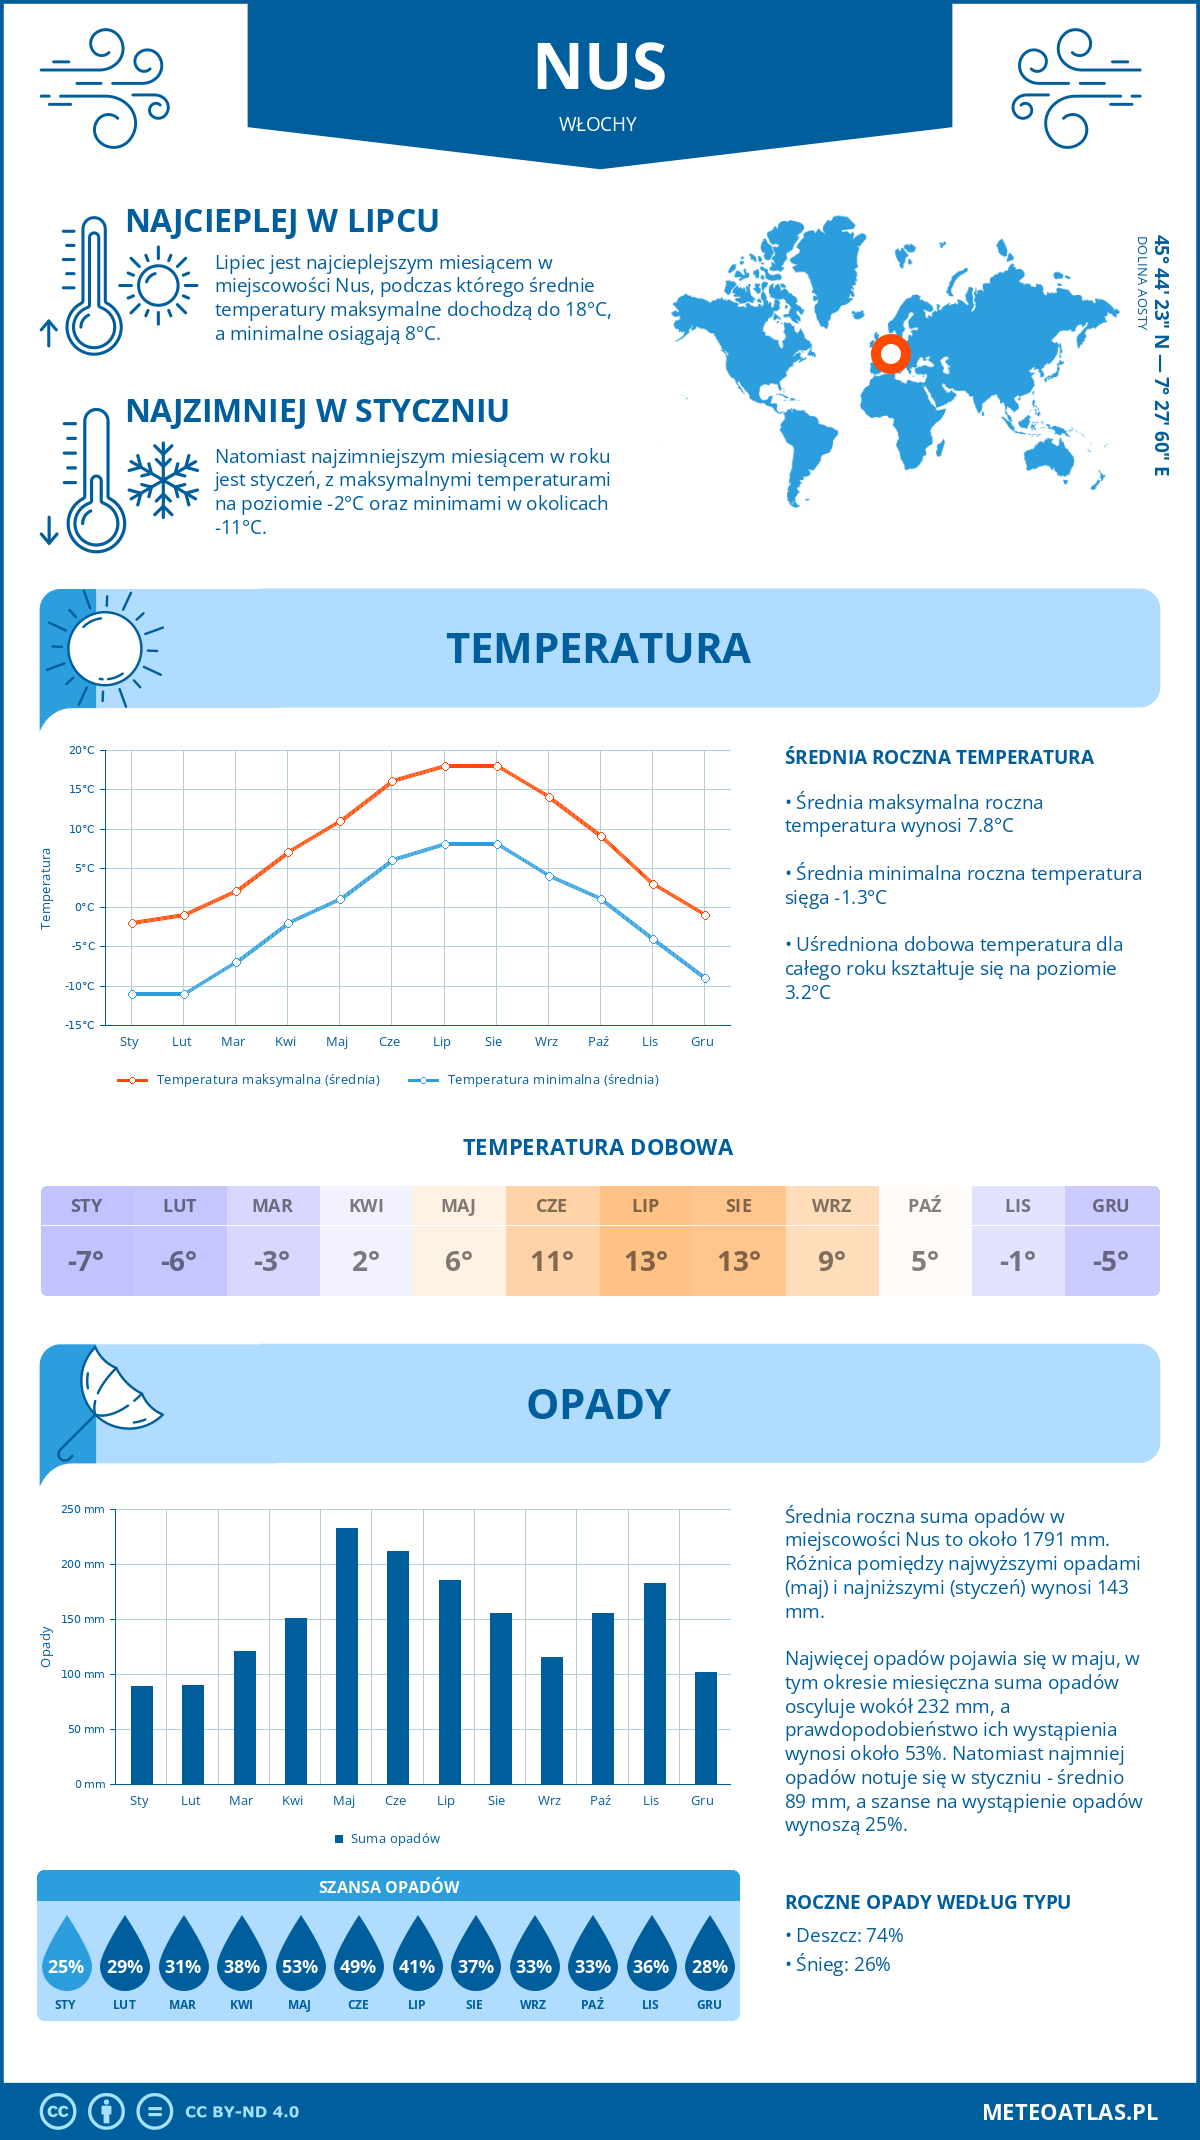 Pogoda Nus (Włochy). Temperatura oraz opady.